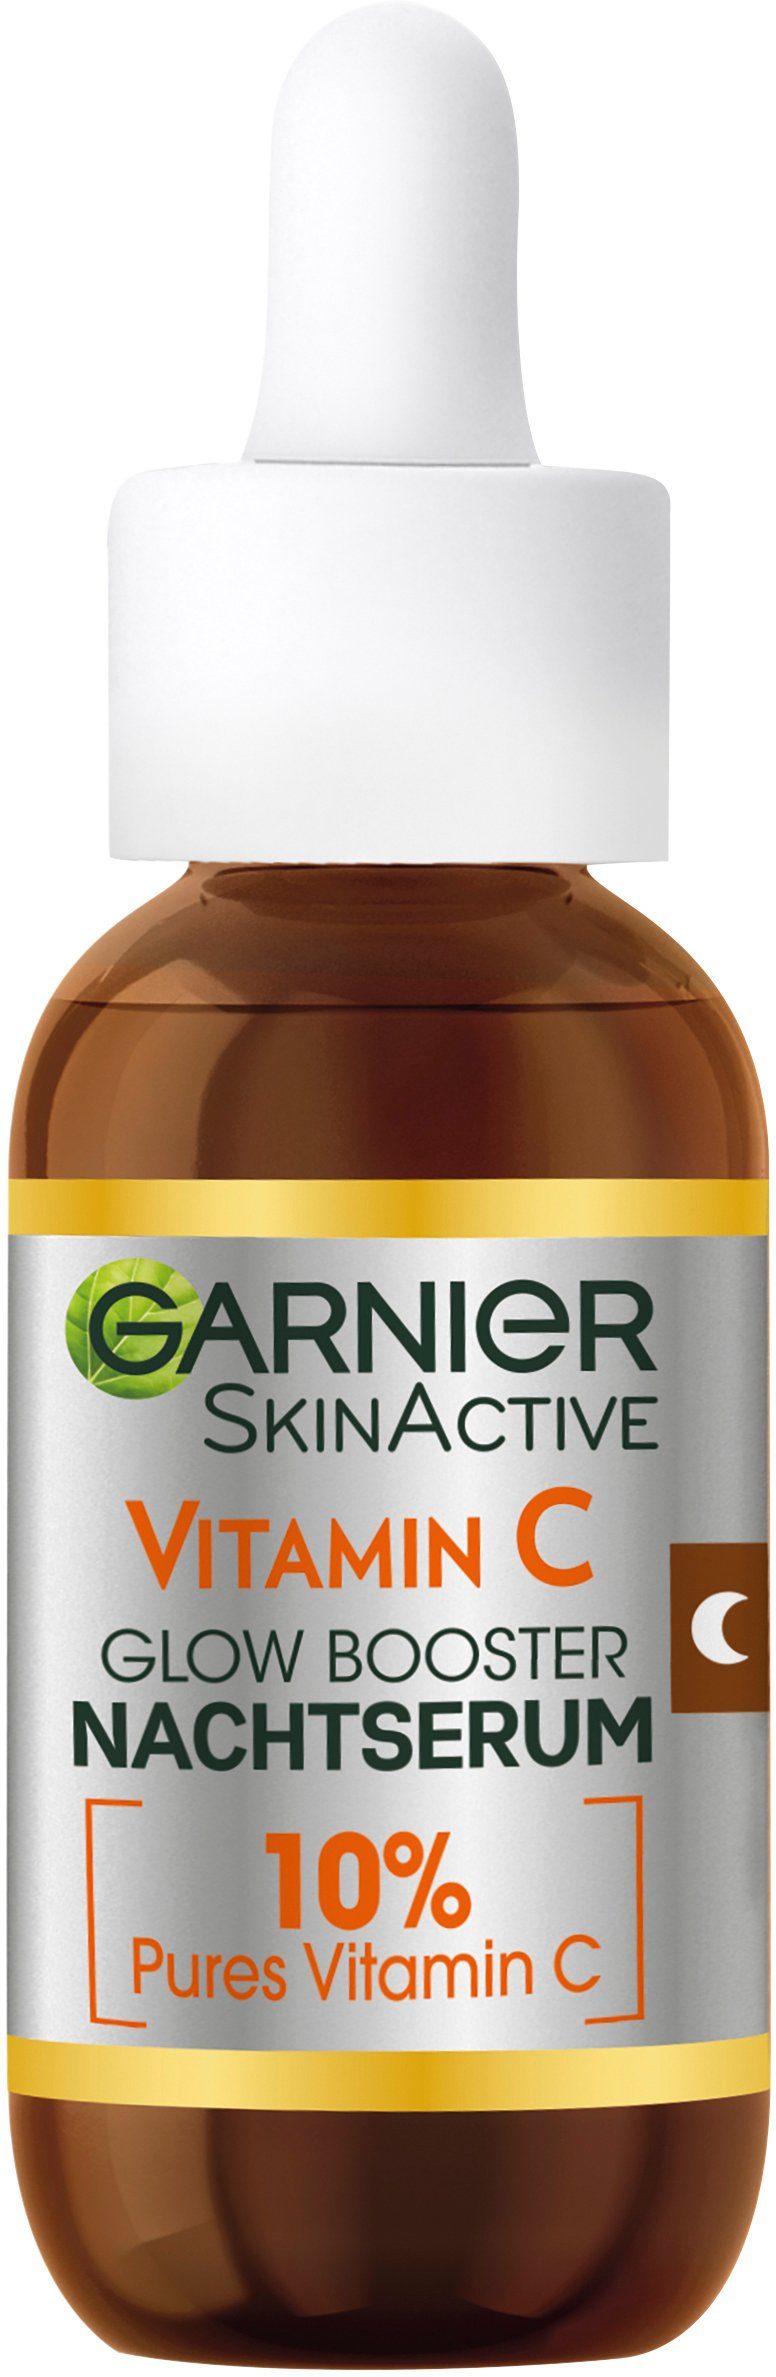 Booster Vitamin Nachtserum GARNIER Glow C Garnier Gesichtsserum